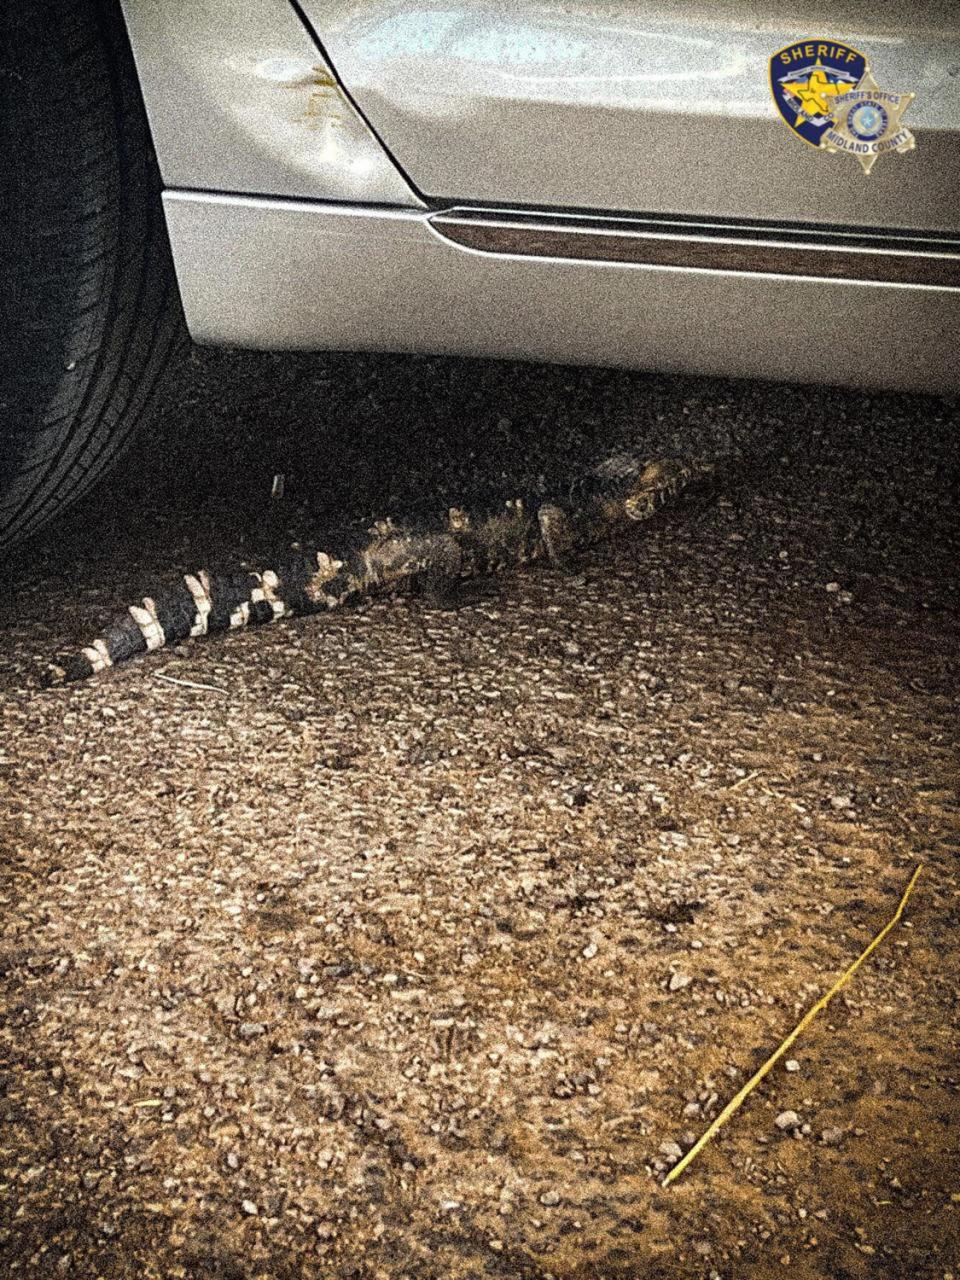 alligator found in Texas desert